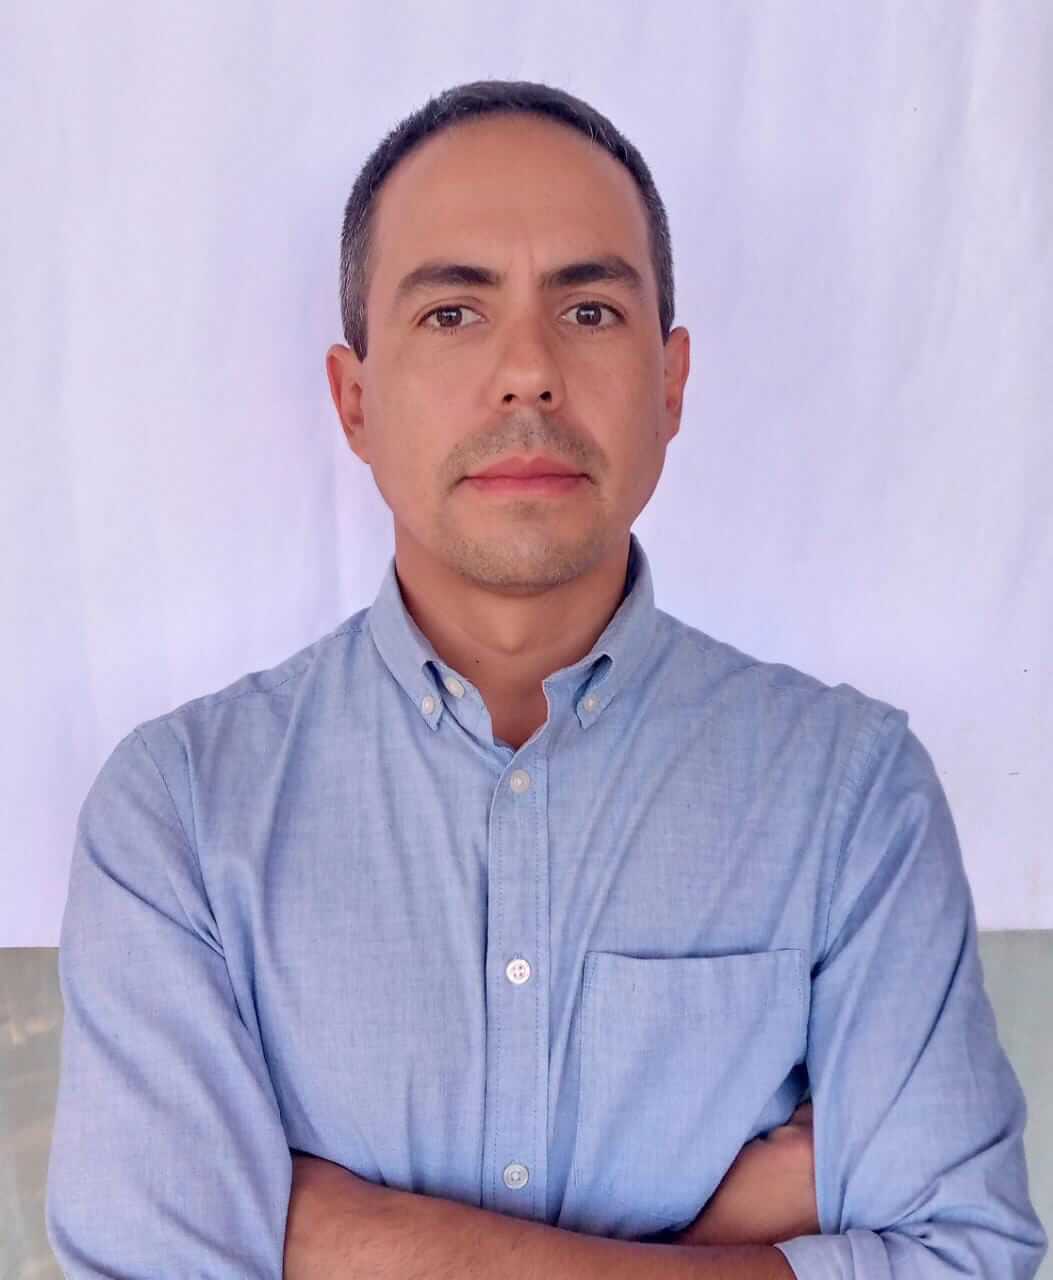 Joaquin Andrés Chacin Barragán